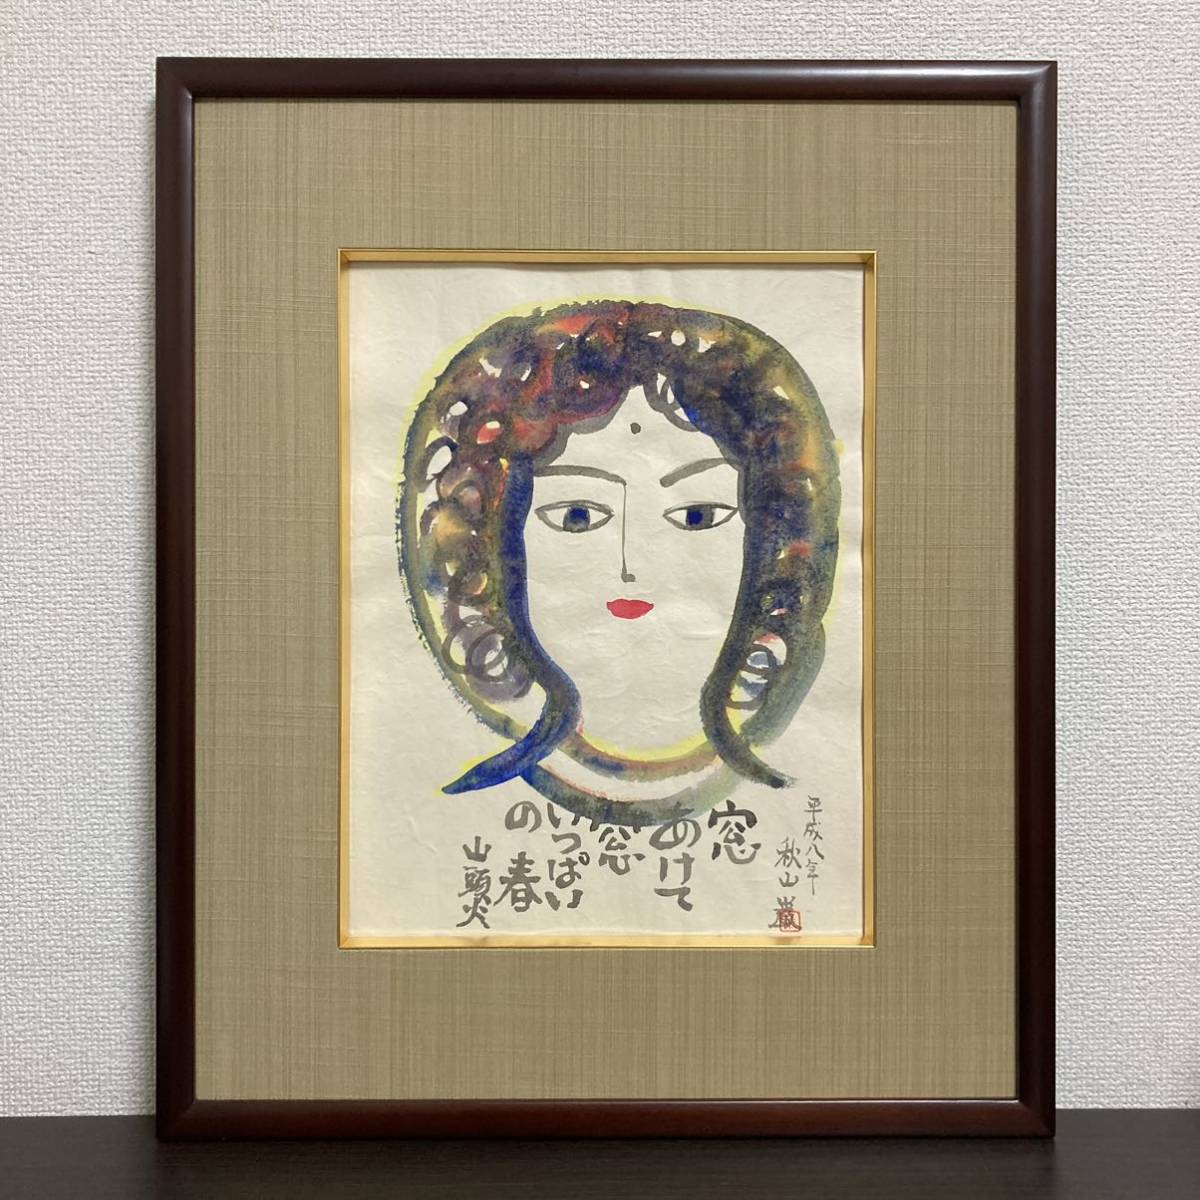 [Autenticidad garantizada] Pintura original en acuarela Santouka de Iwao Akiyama, Firmado a mano., Escrito, Pintura Budista, Cuadro, cuadro, acuarela, retrato